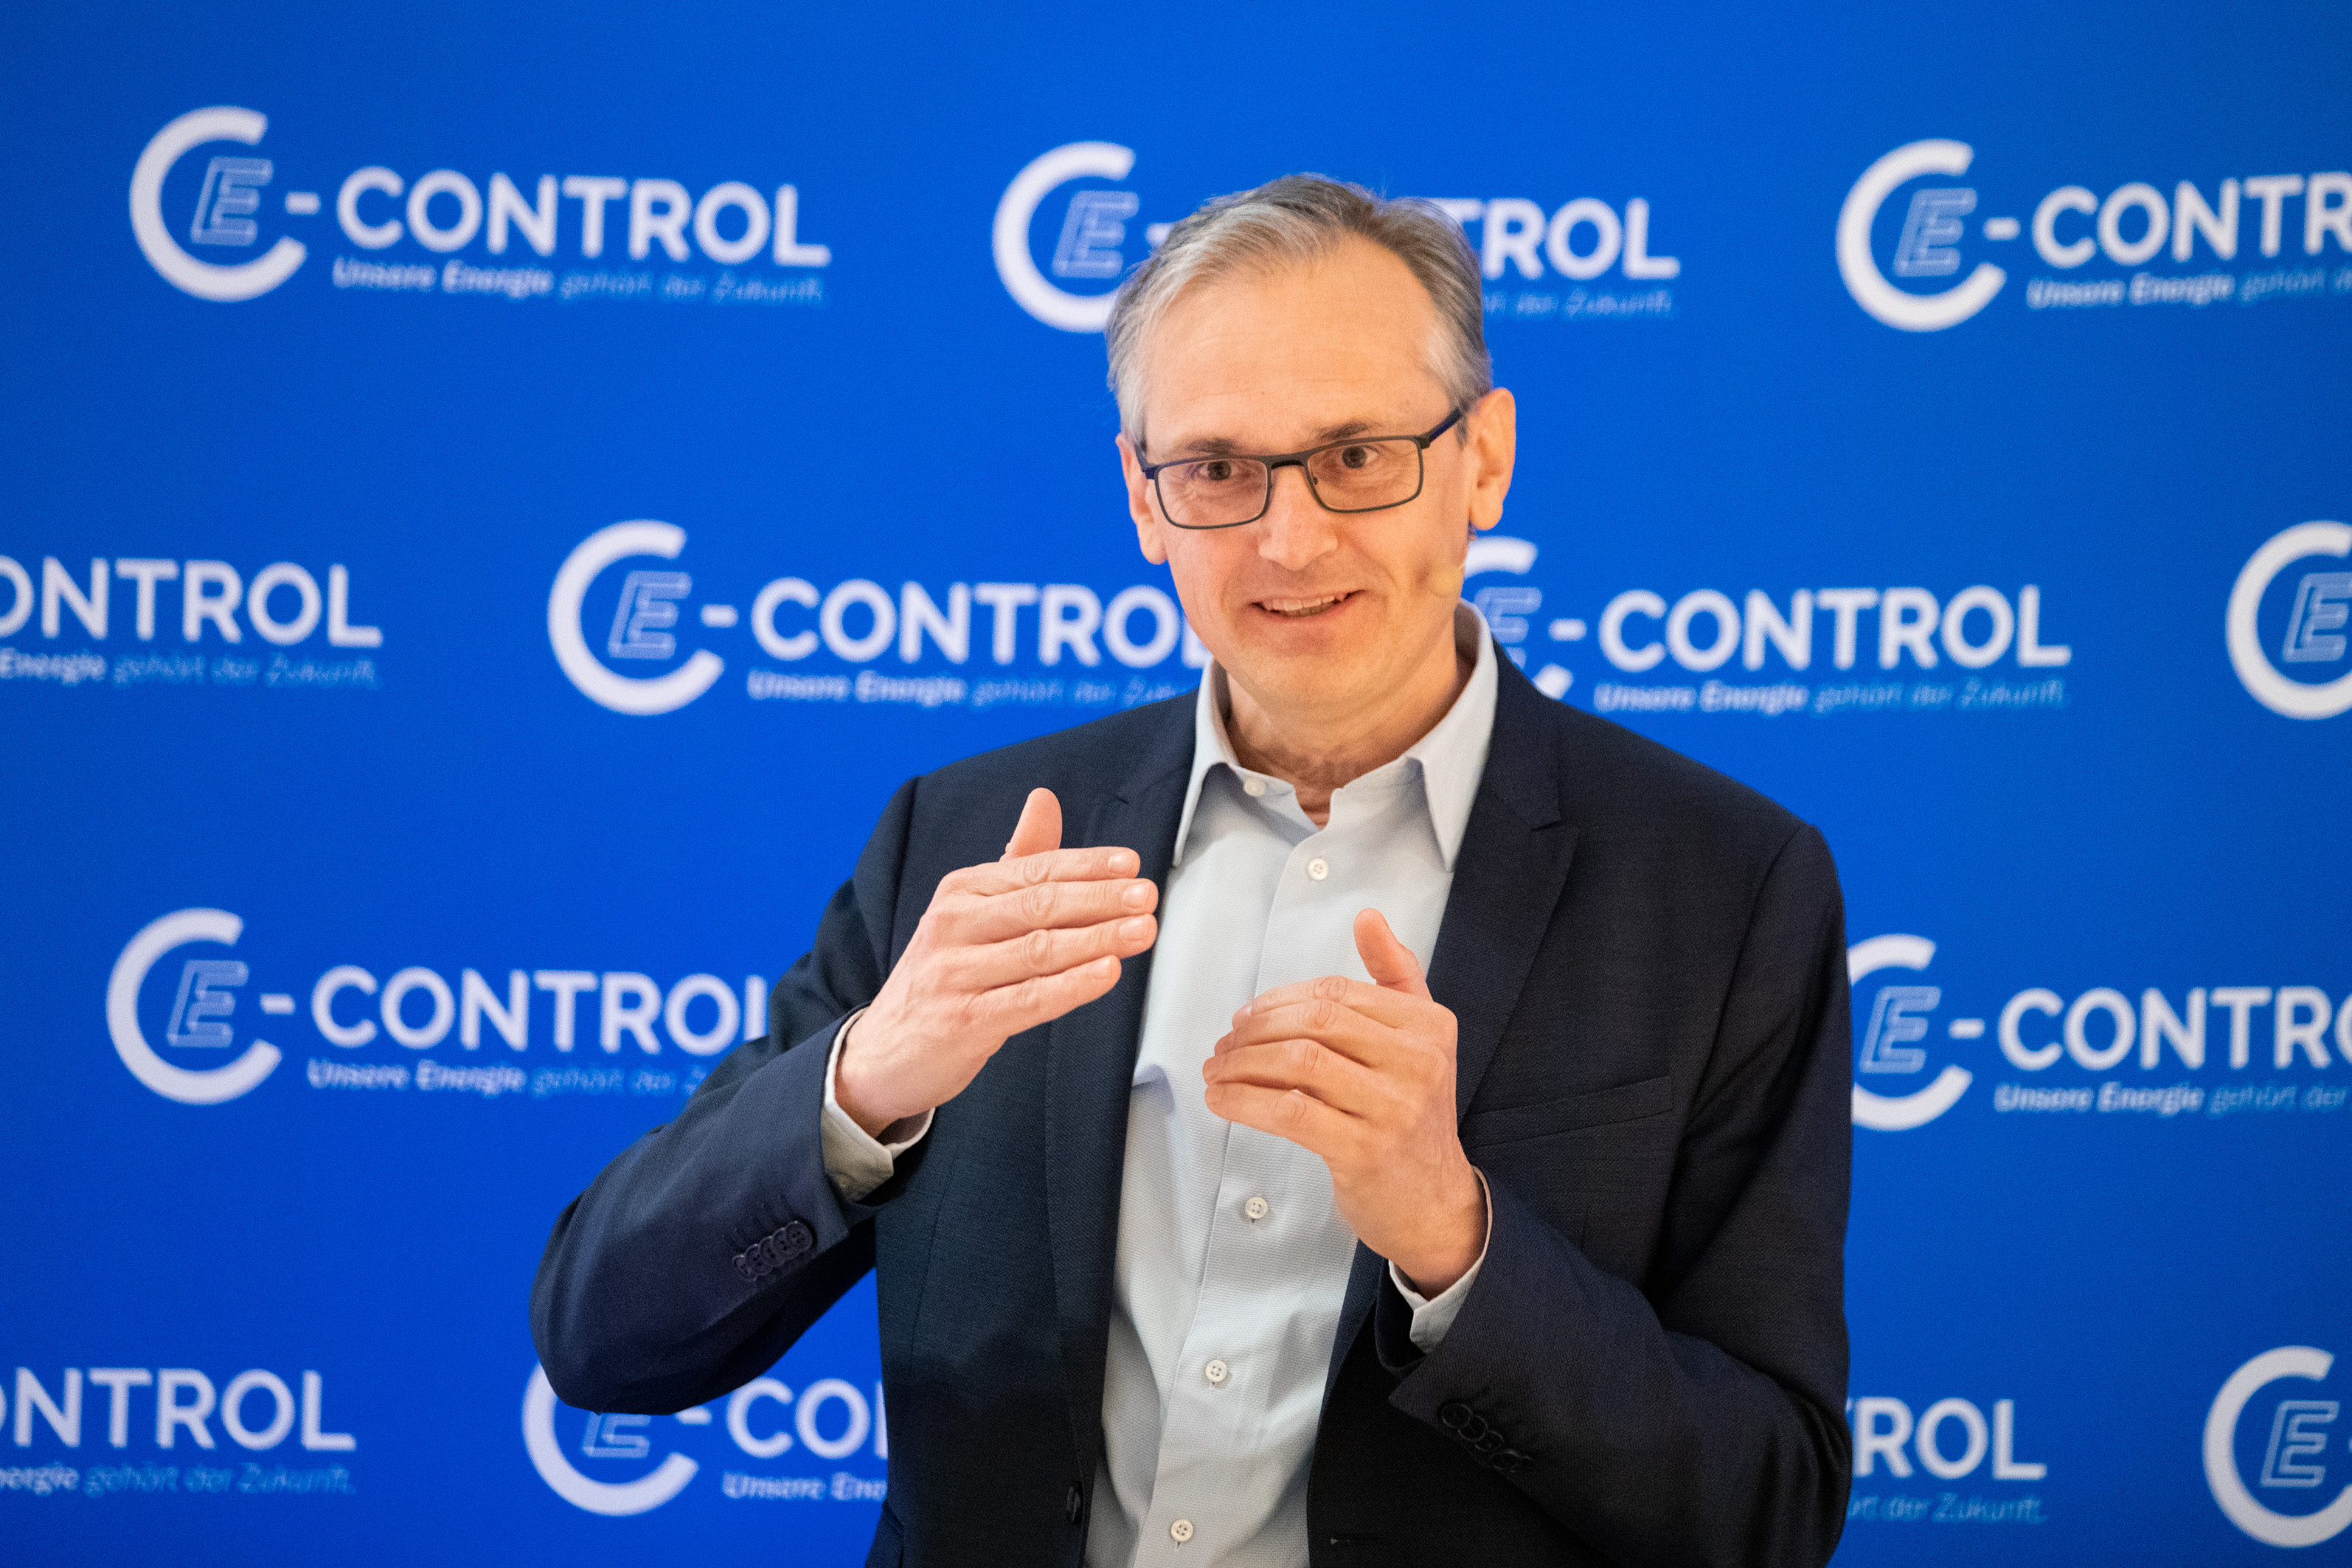 Co-Gastgeber Wolfgang Urbantschitsch, E-Control